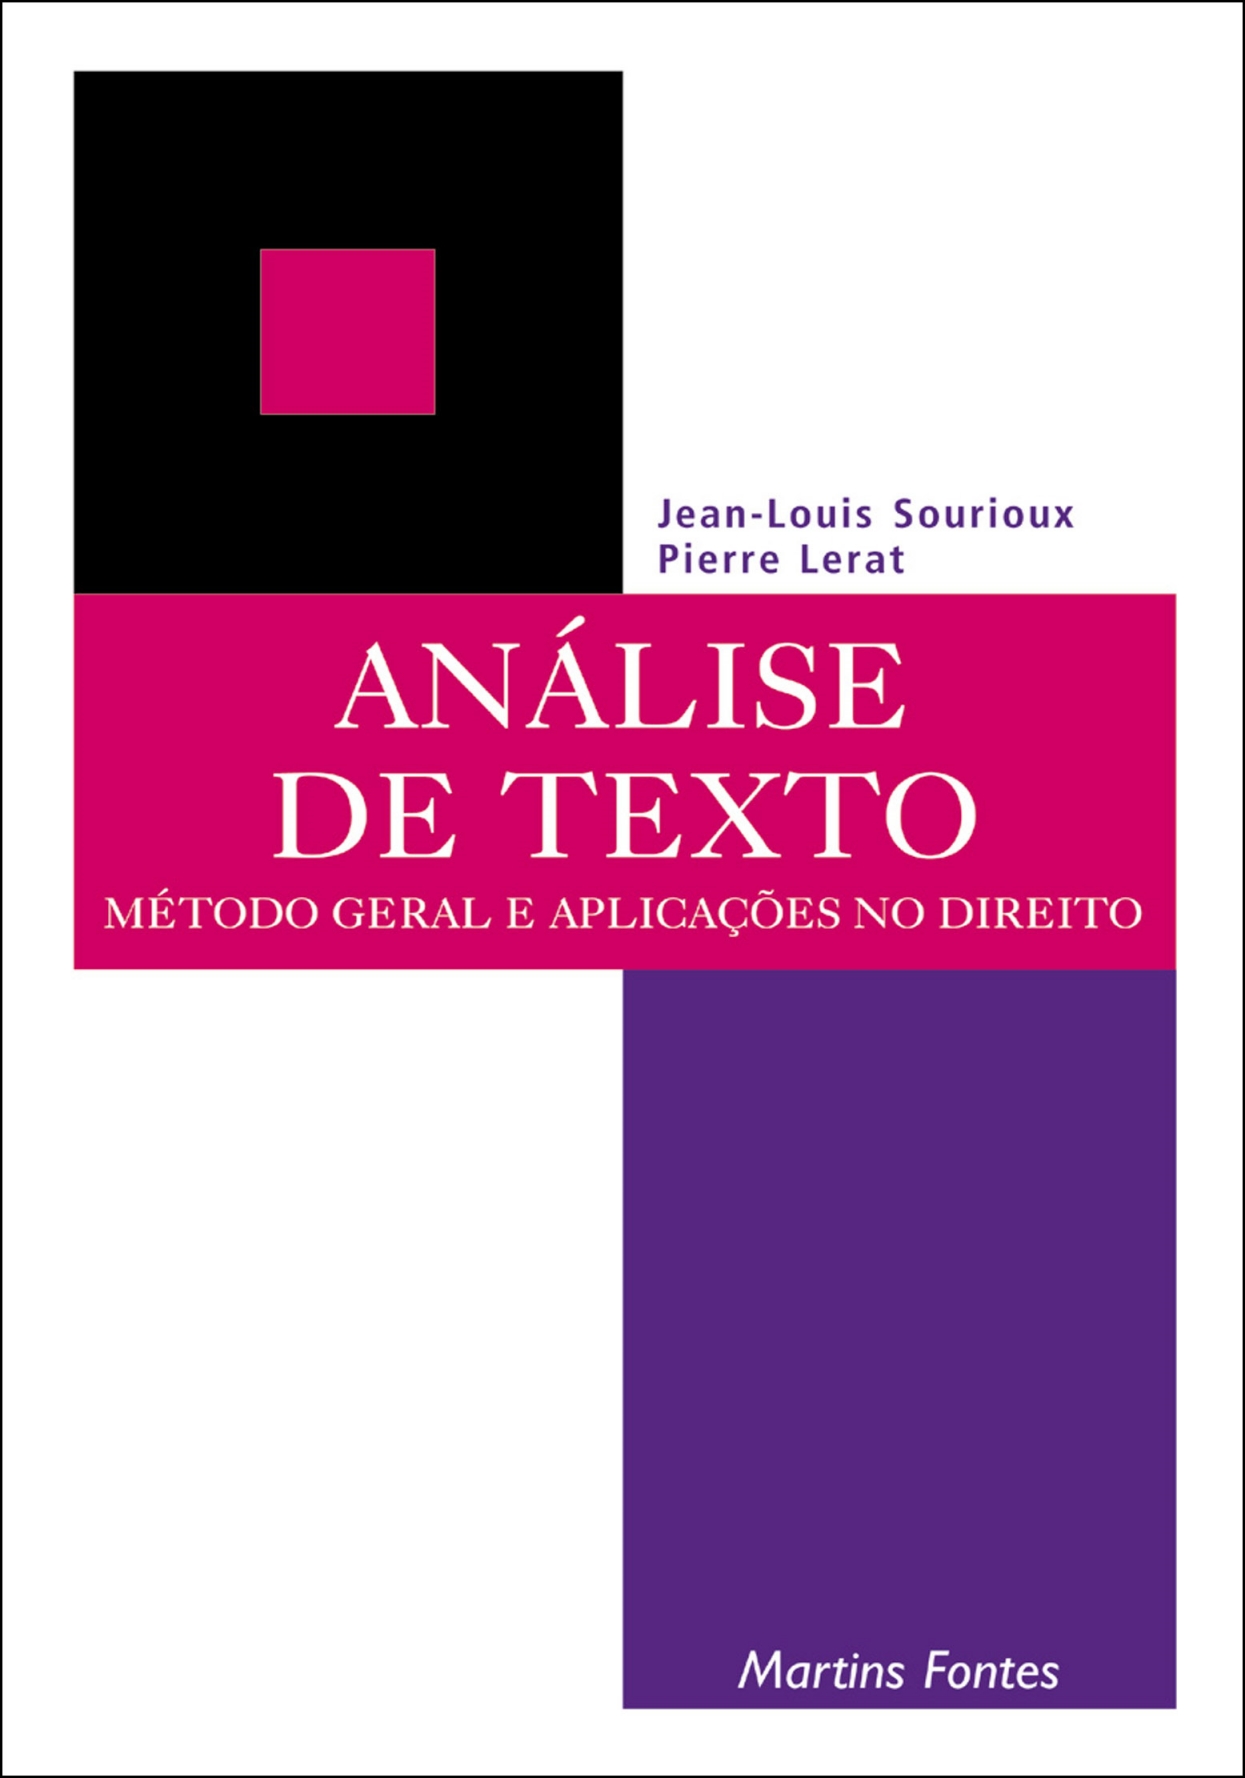 Análise de texto: método geral e aplicações no direito  - Martins Fontes